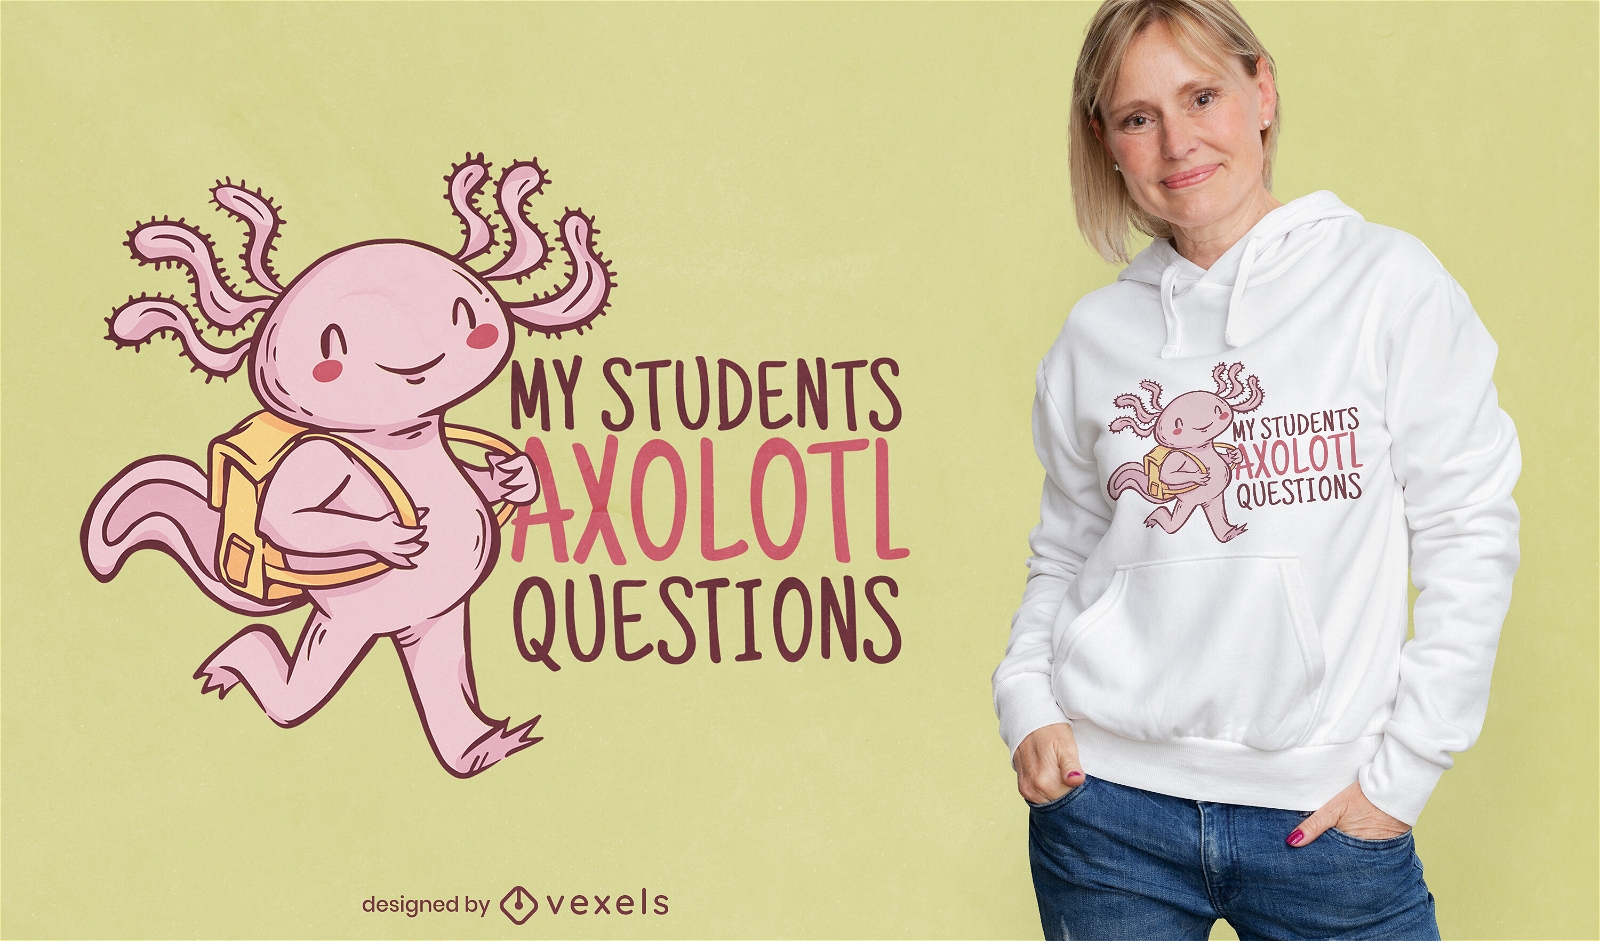 Design engra?ado de camiseta de estudante axolotl